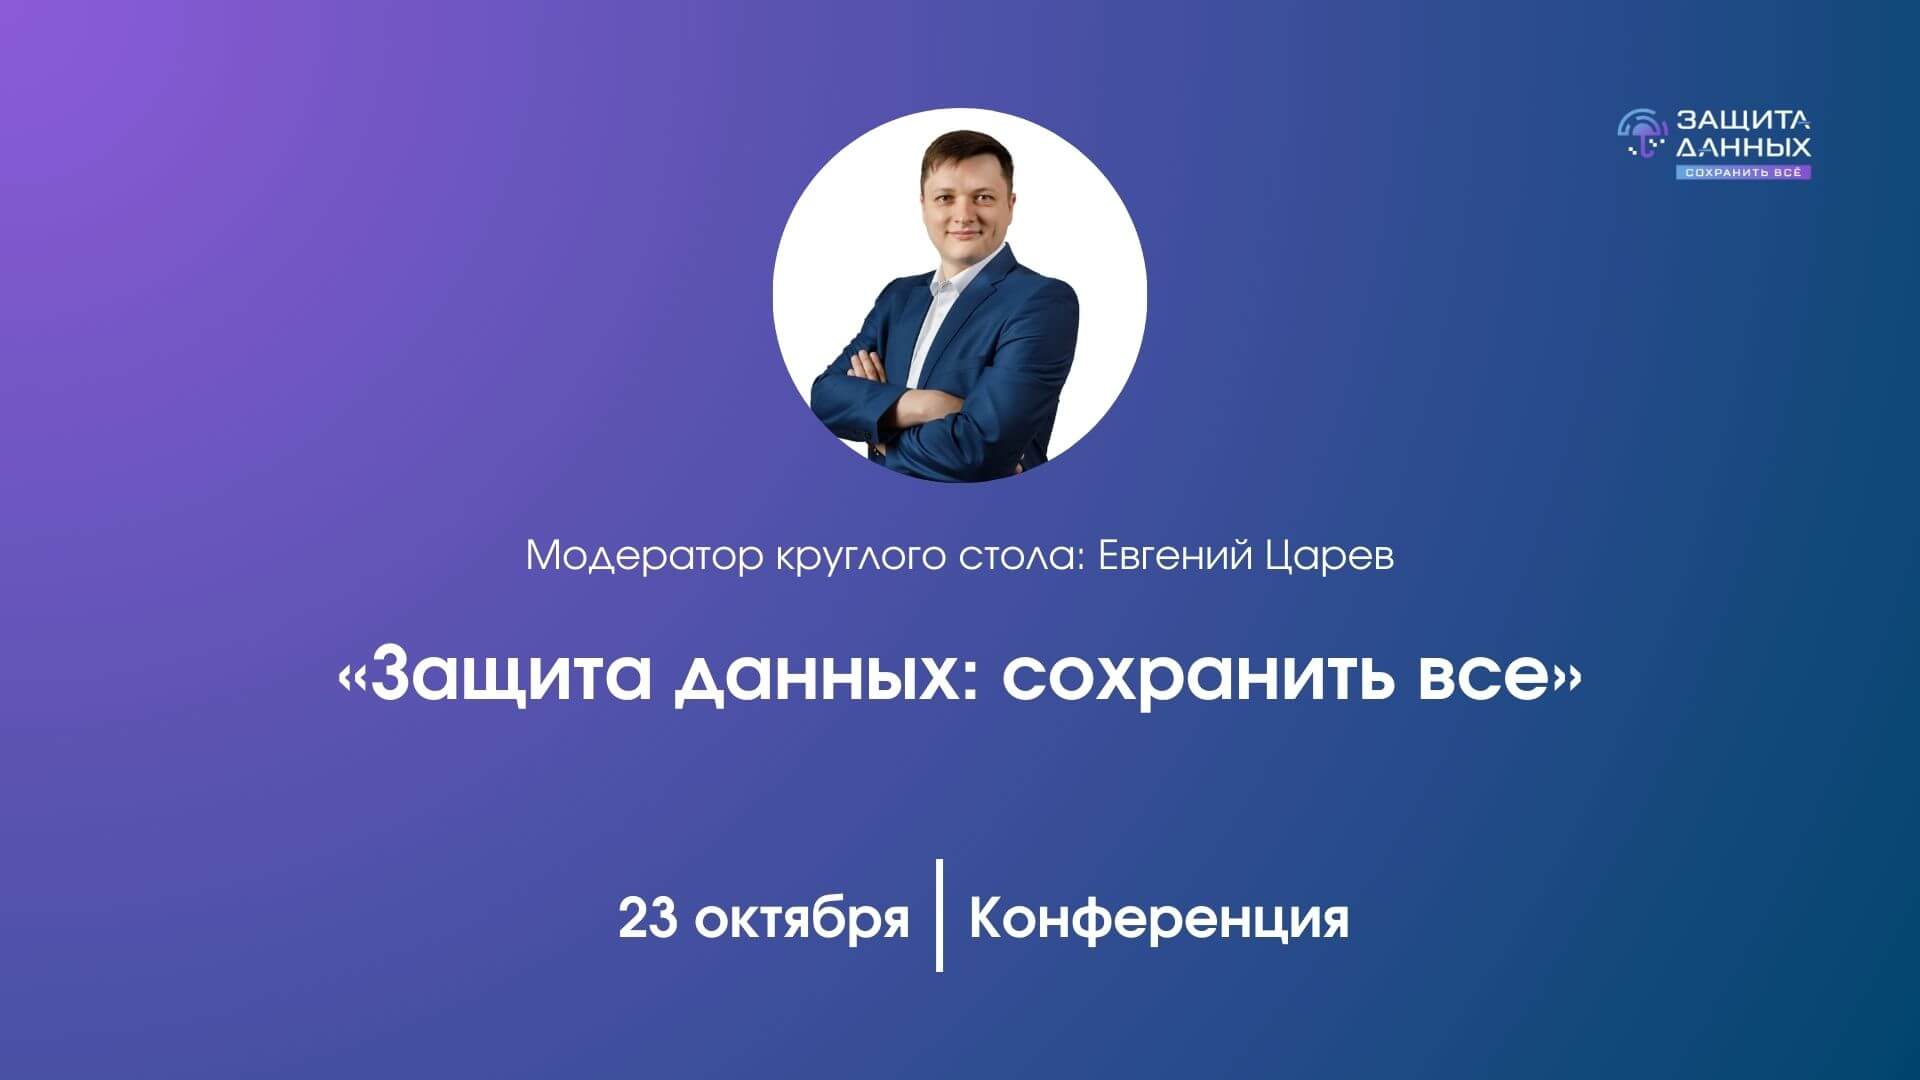 Евгений Царев выступит модератором круглого стола на конференции «Защита данных: сохранить все»